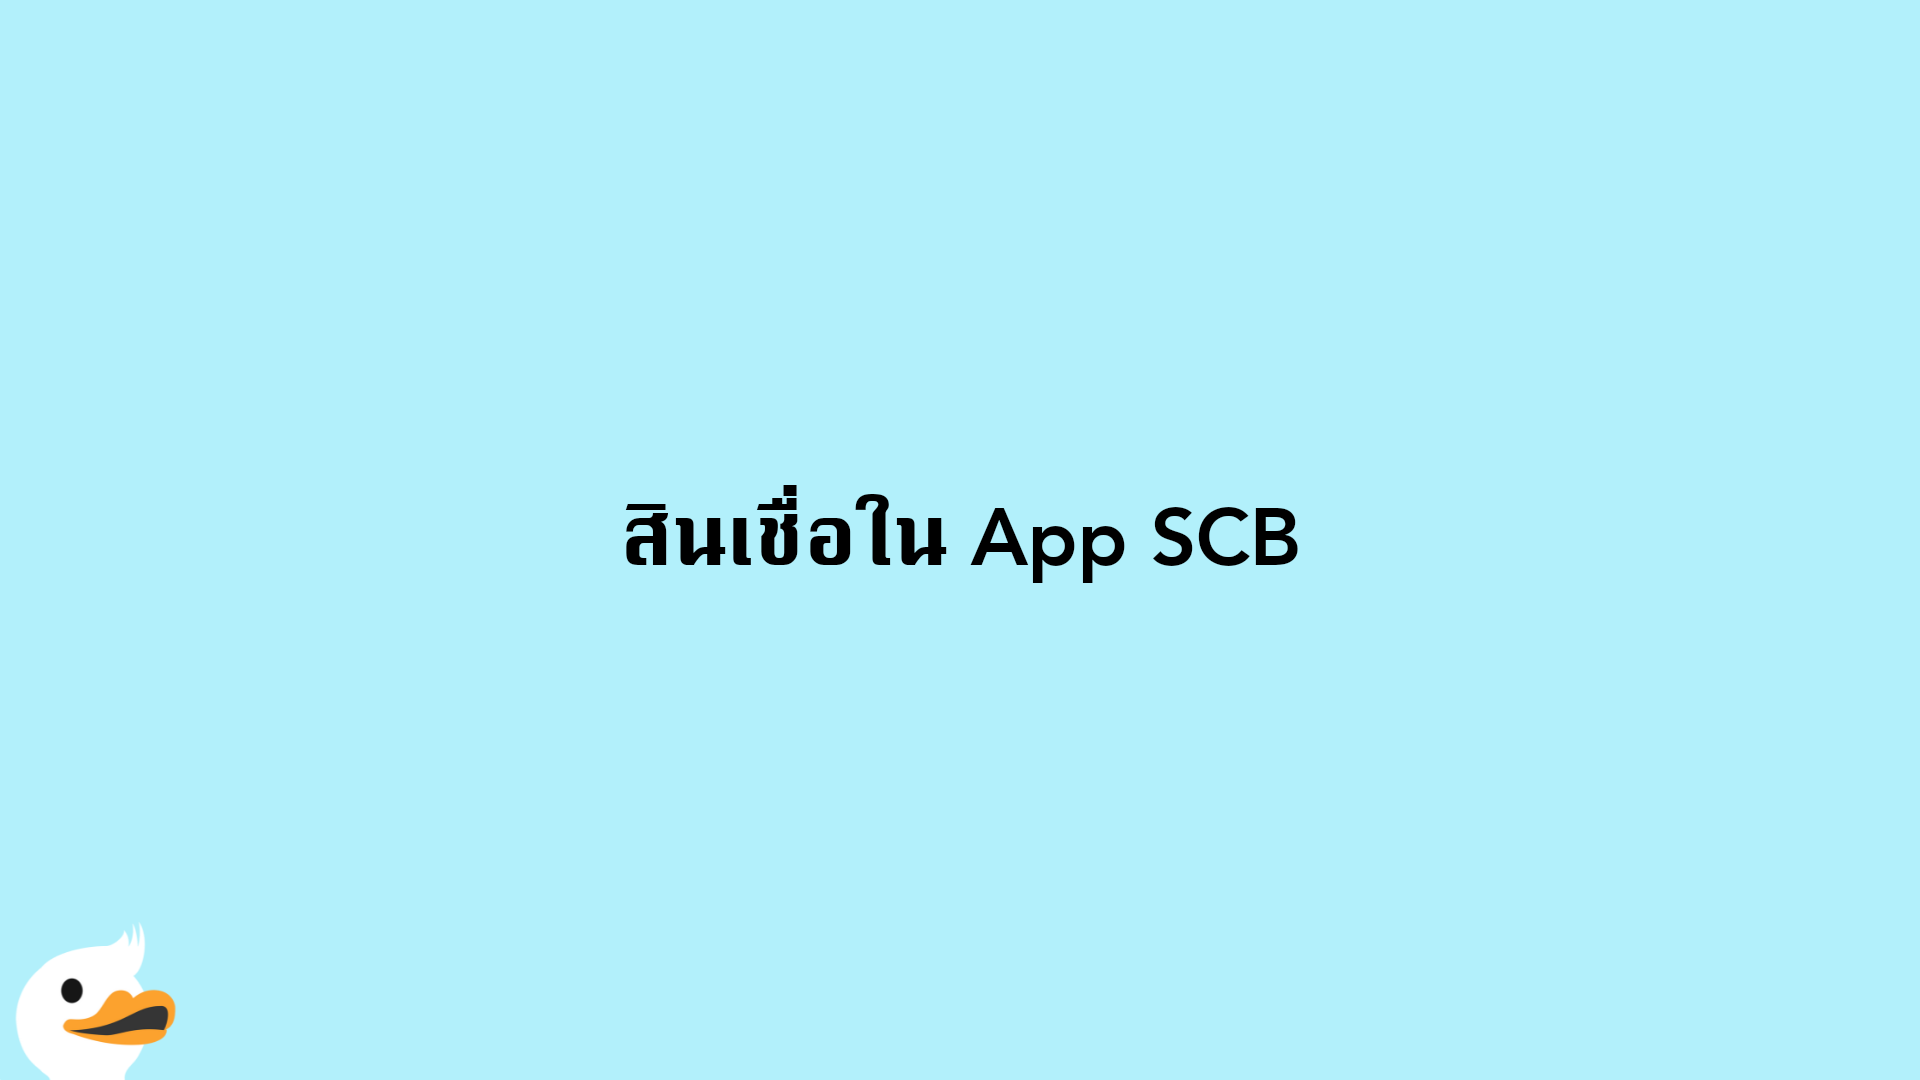 สินเชื่อใน App SCB